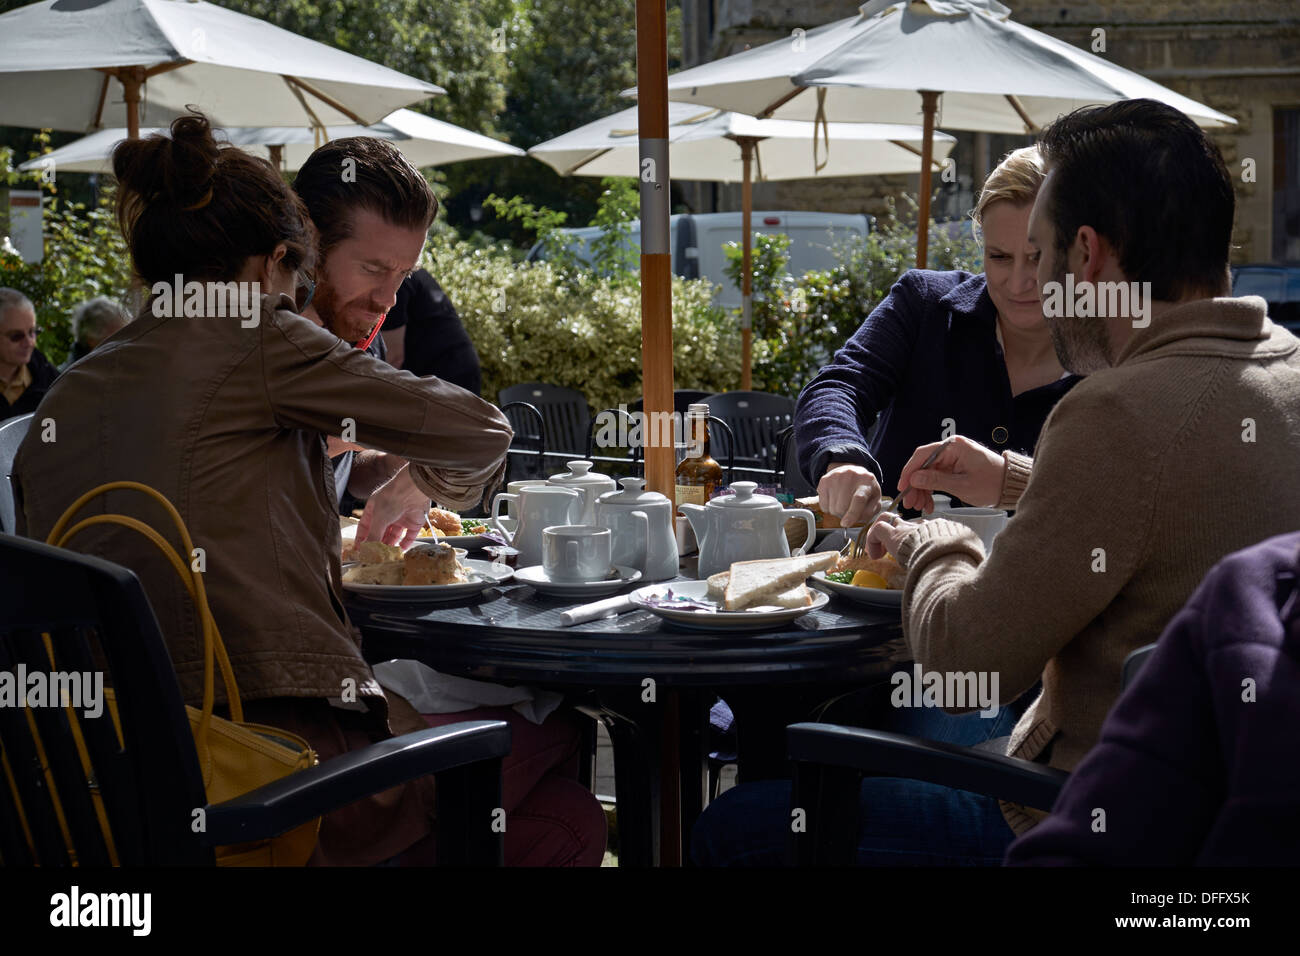 Menschen, die im Freien essen und ein traditionelles Tee und ein leichtes Mittagessen unter Sonnenschirmen genießen. England Großbritannien Stockfoto